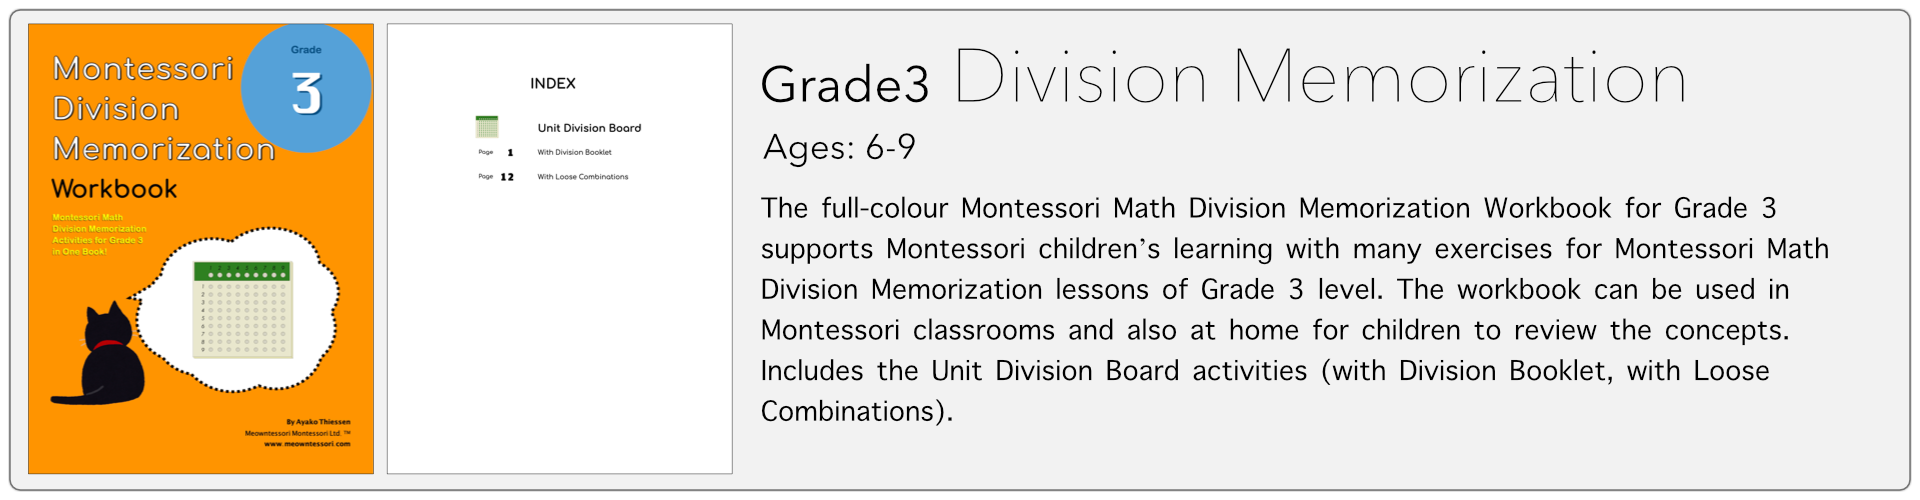 grade3 division memorization